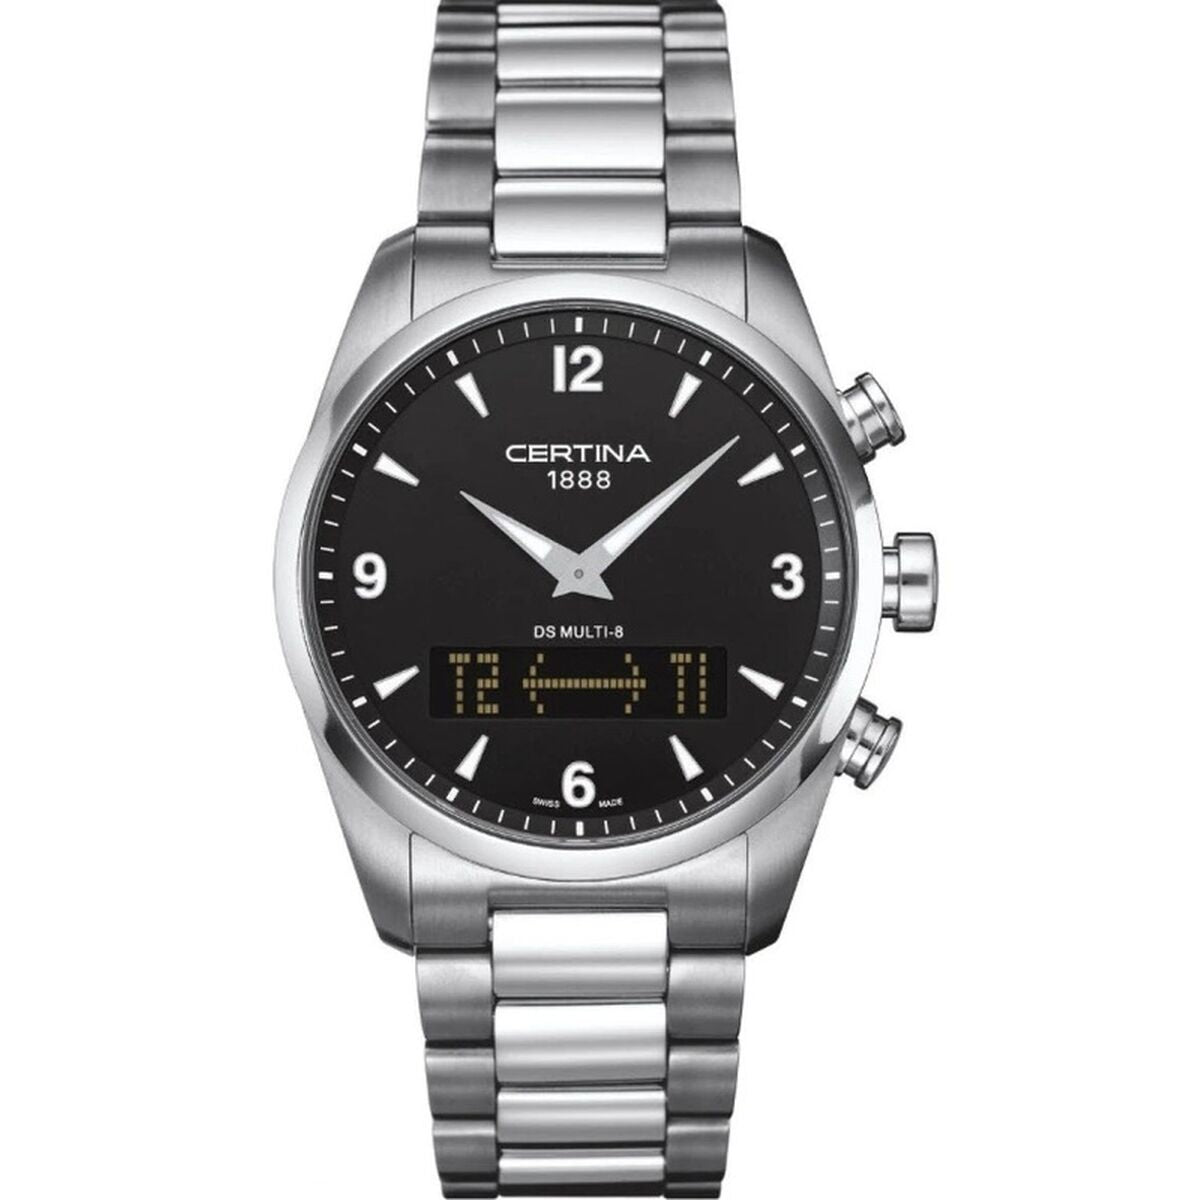 Certina Men's Watch  Ds Multi-8 Gbby2 In Metallic